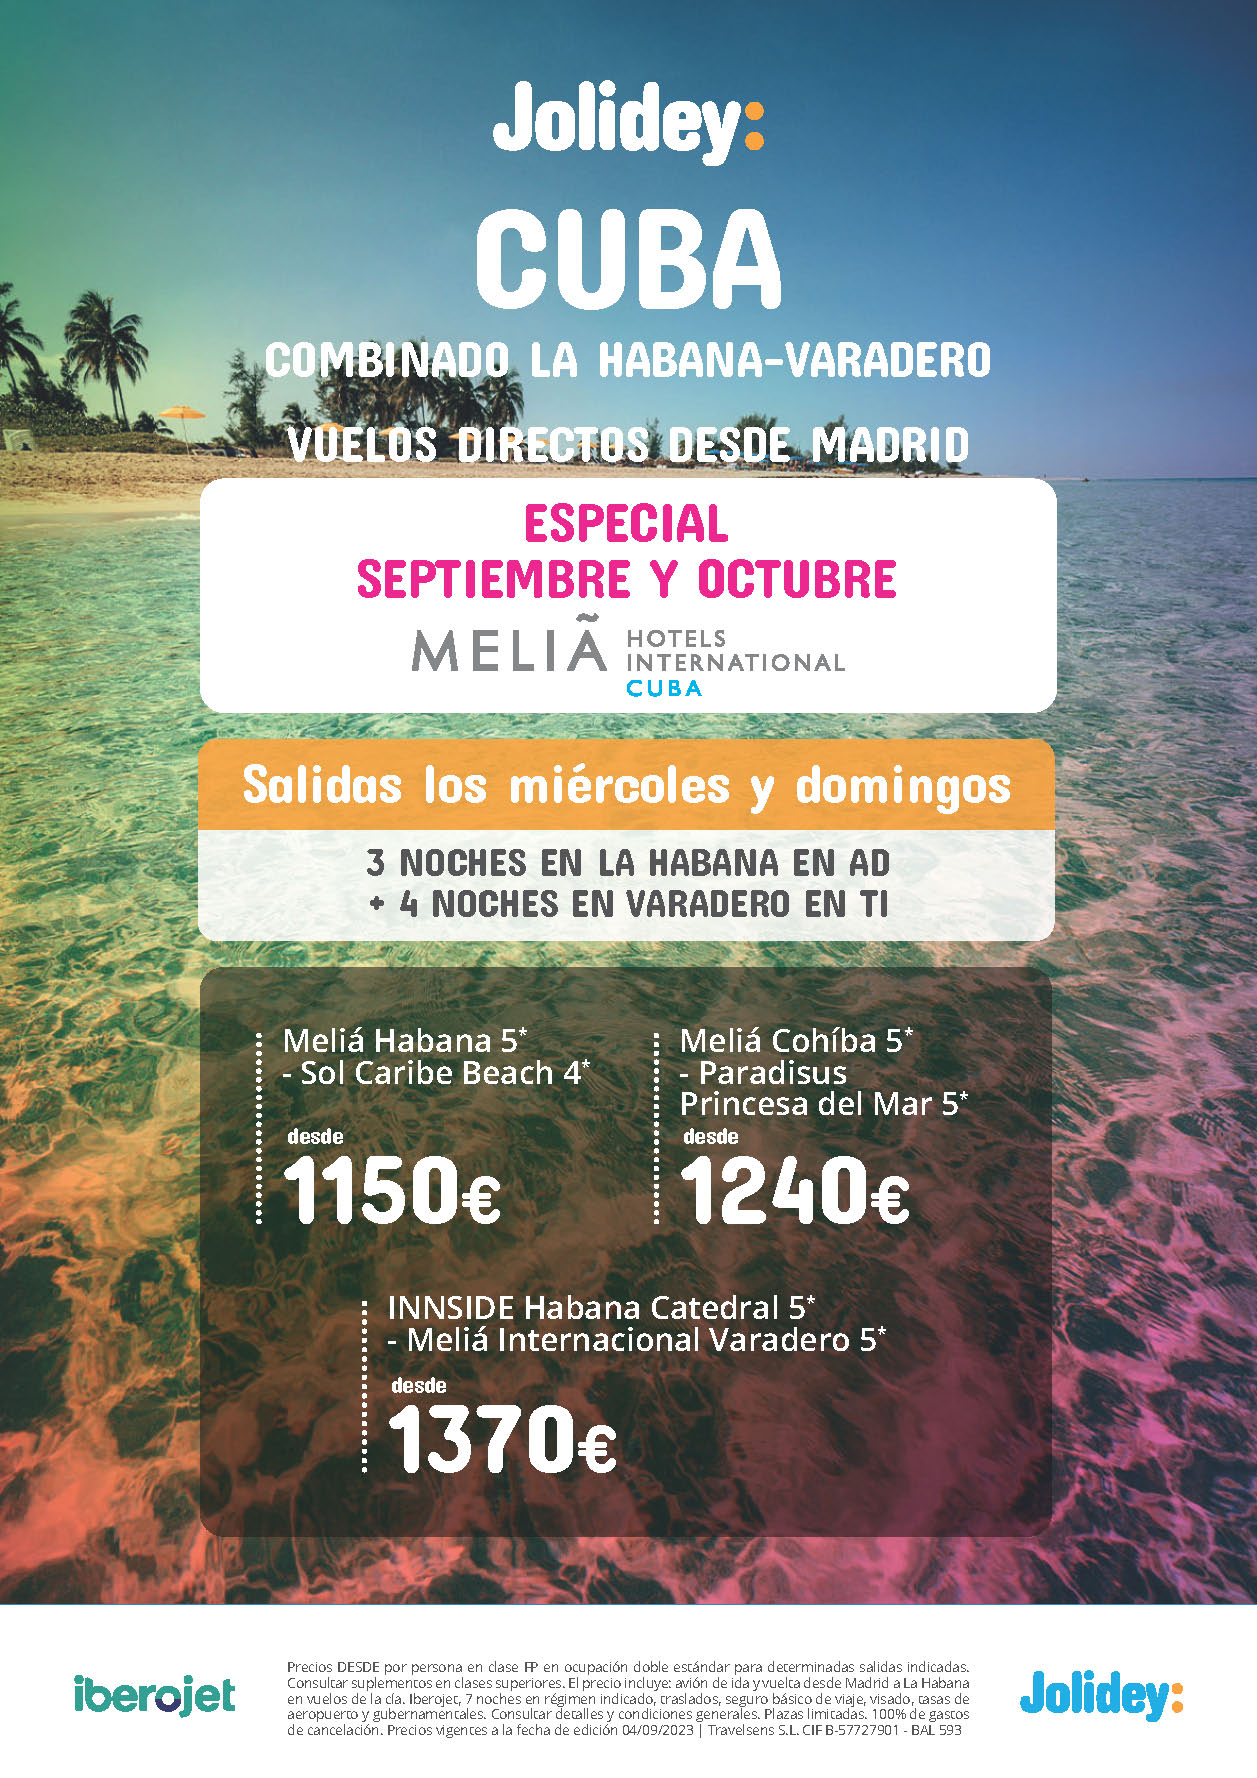 Oferta Jolidey Septiembre Octubre 2023 Combinado La Habana Varadero Hoteles Melia 9 dias AD y Todo Incluido salidas en vuelo directo desde Madrid